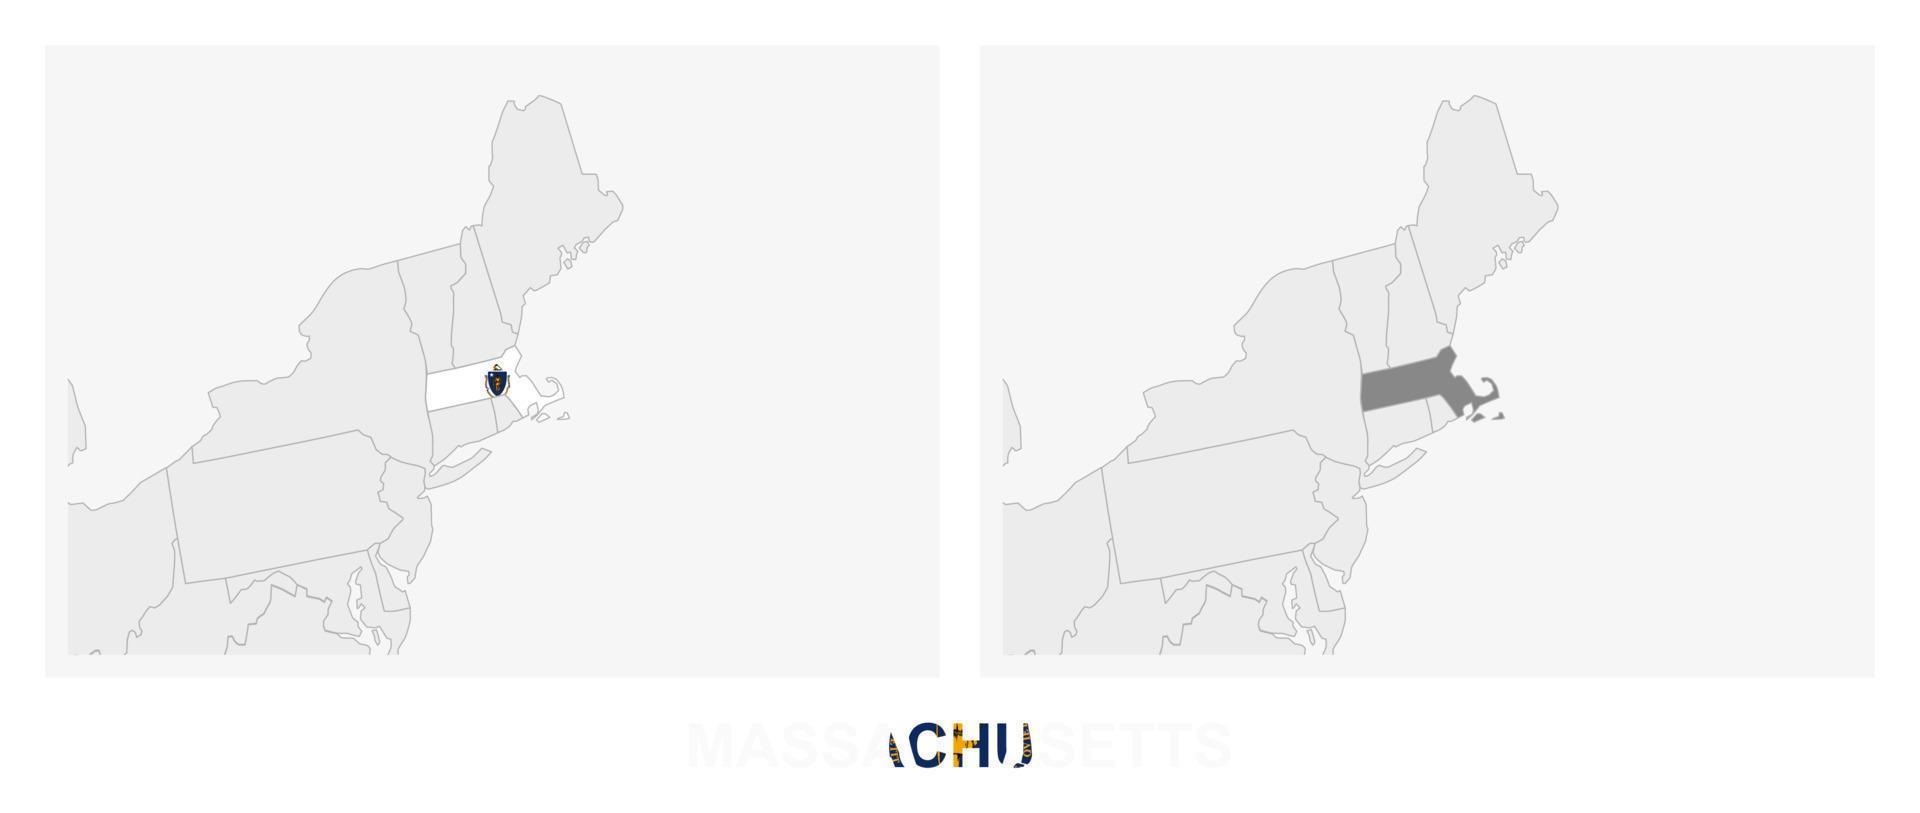 zwei versionen der karte des us-bundesstaates massachusetts, mit der flagge von massachusetts und dunkelgrau hervorgehoben. vektor